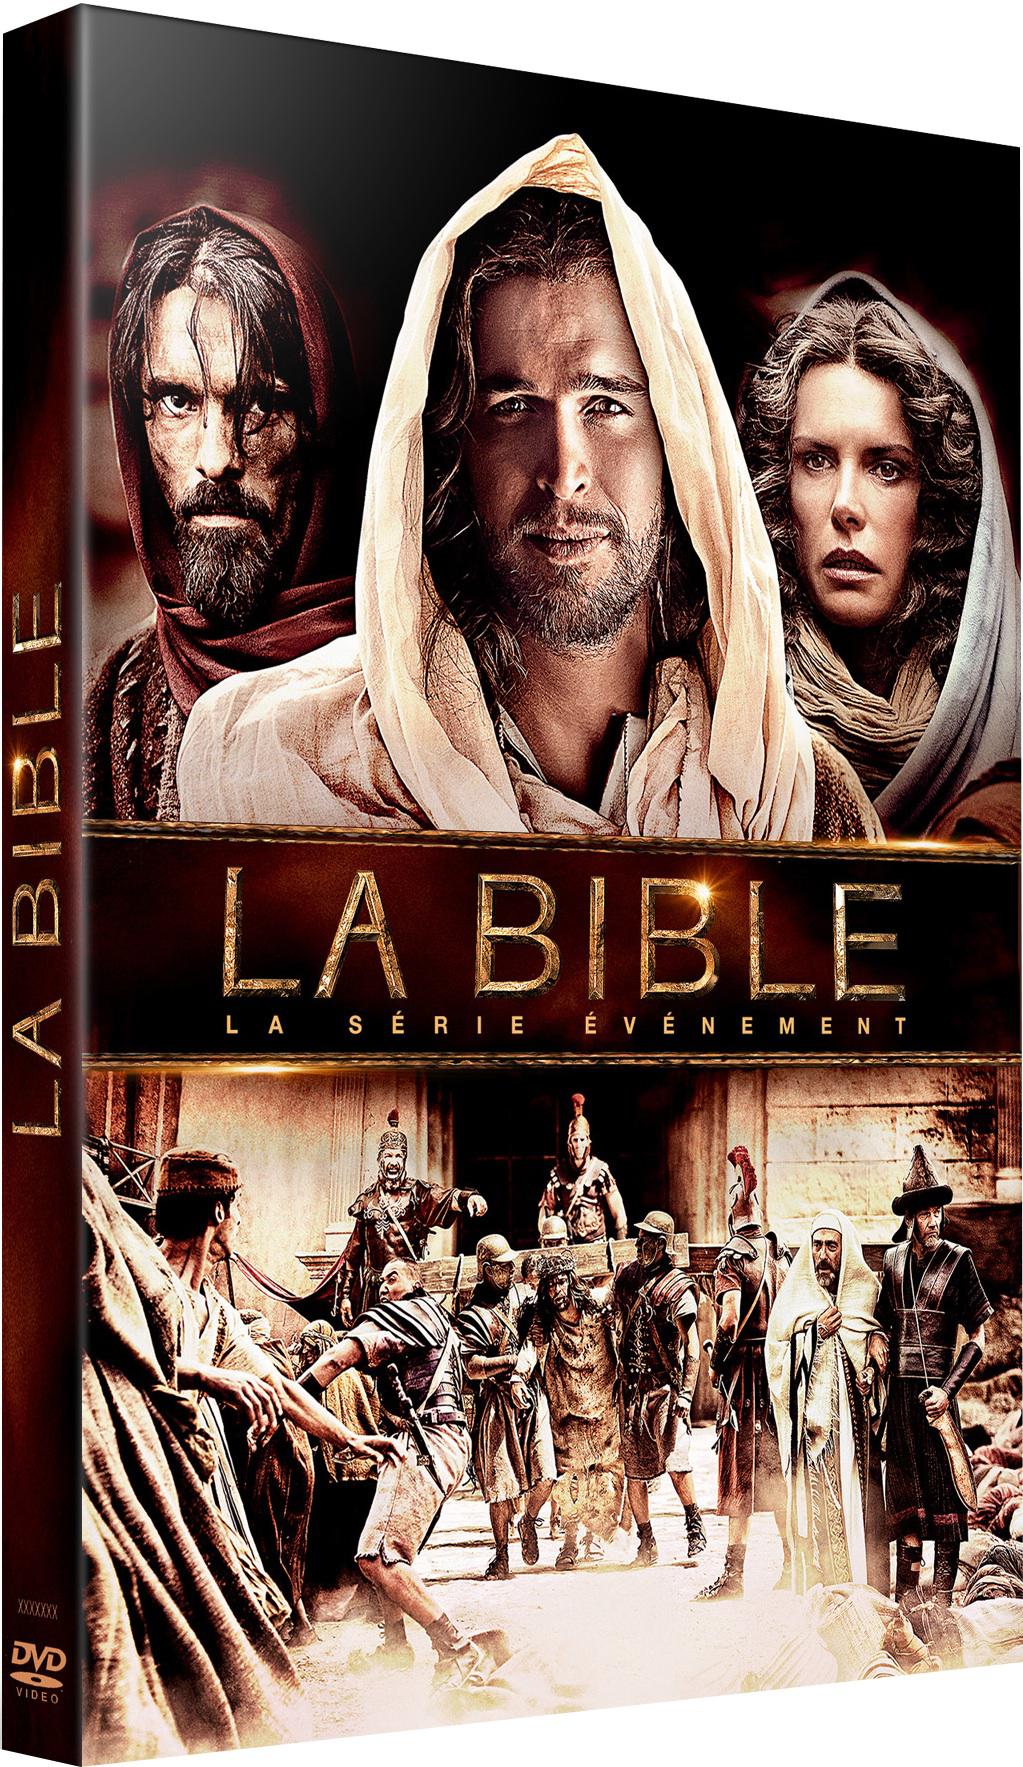 The Bible (2013, Film) CinéSéries